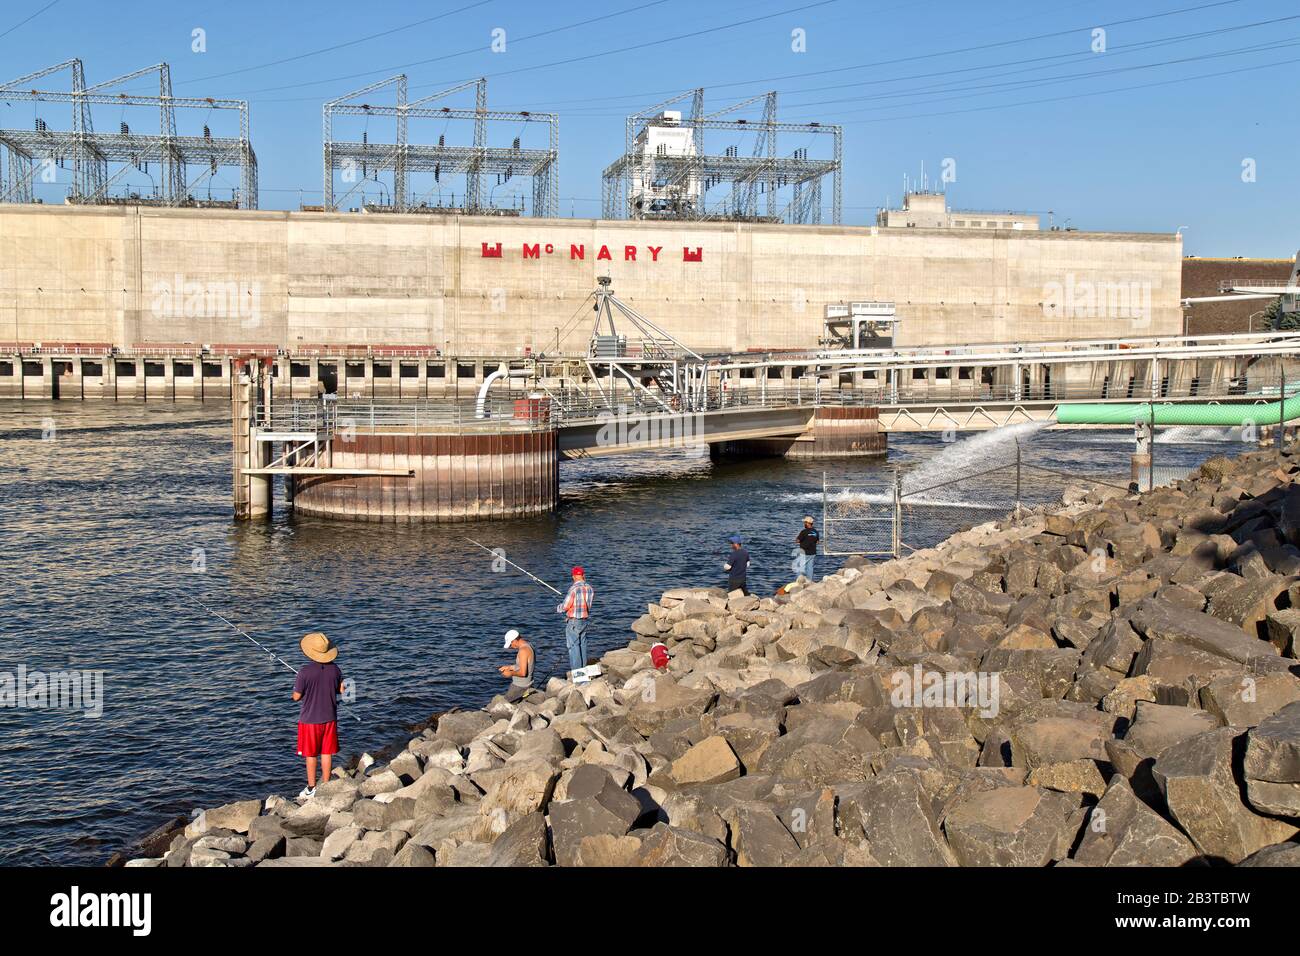 McNary Dam & Lock, Kraftwerk, Fischleiter, Fischer, Columbia River Gorge. Stockfoto